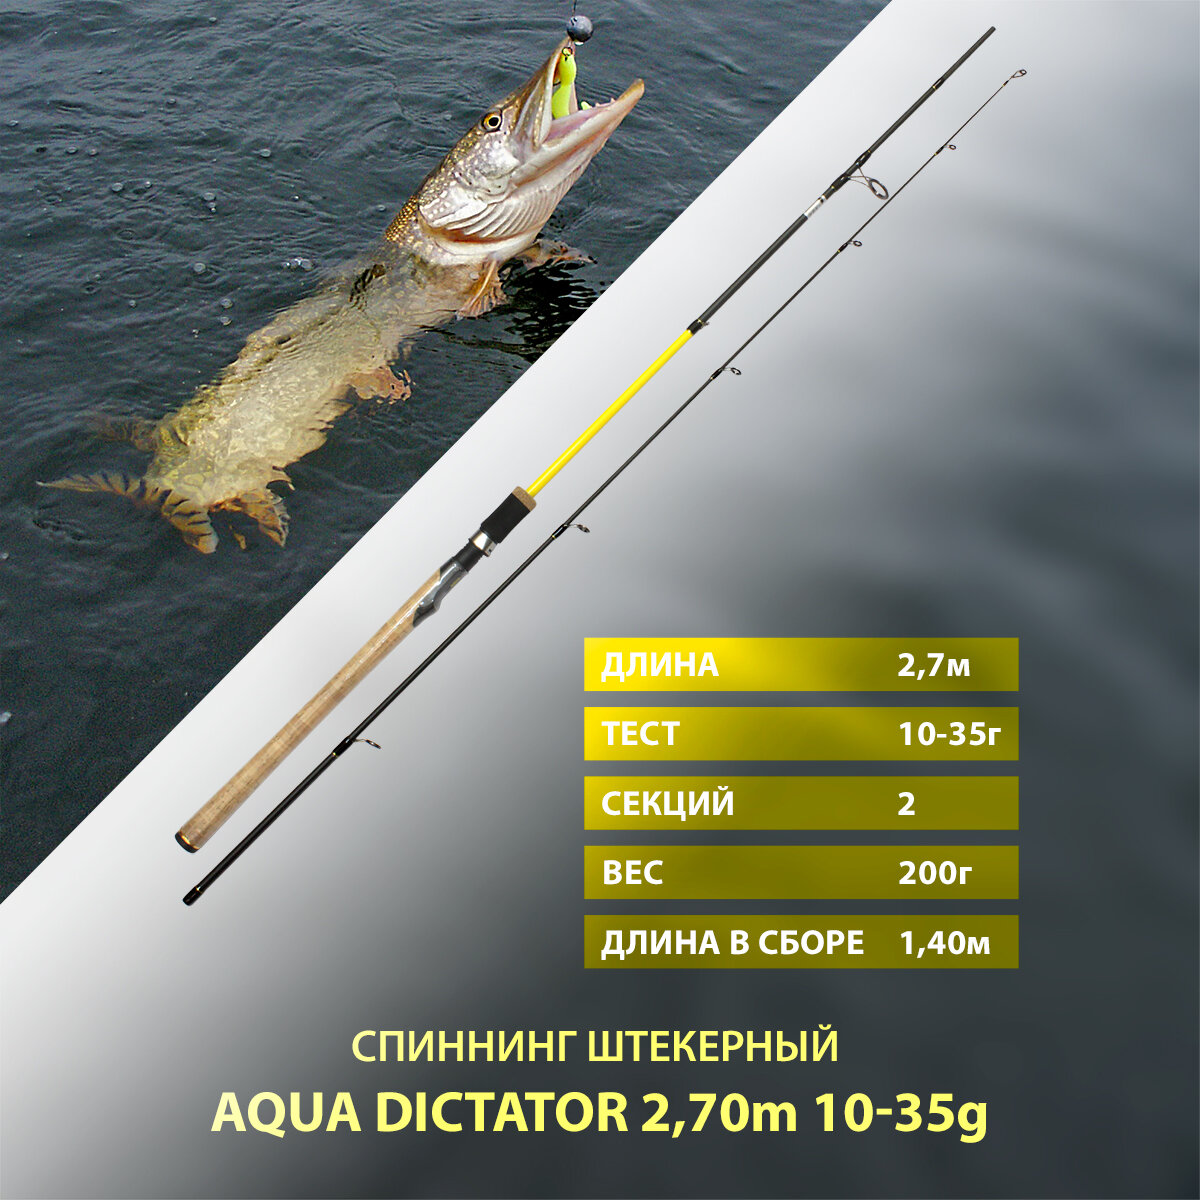 Спиннинг штекерный AQUA DICTATOR, длина 2,70m, тест 10-35g